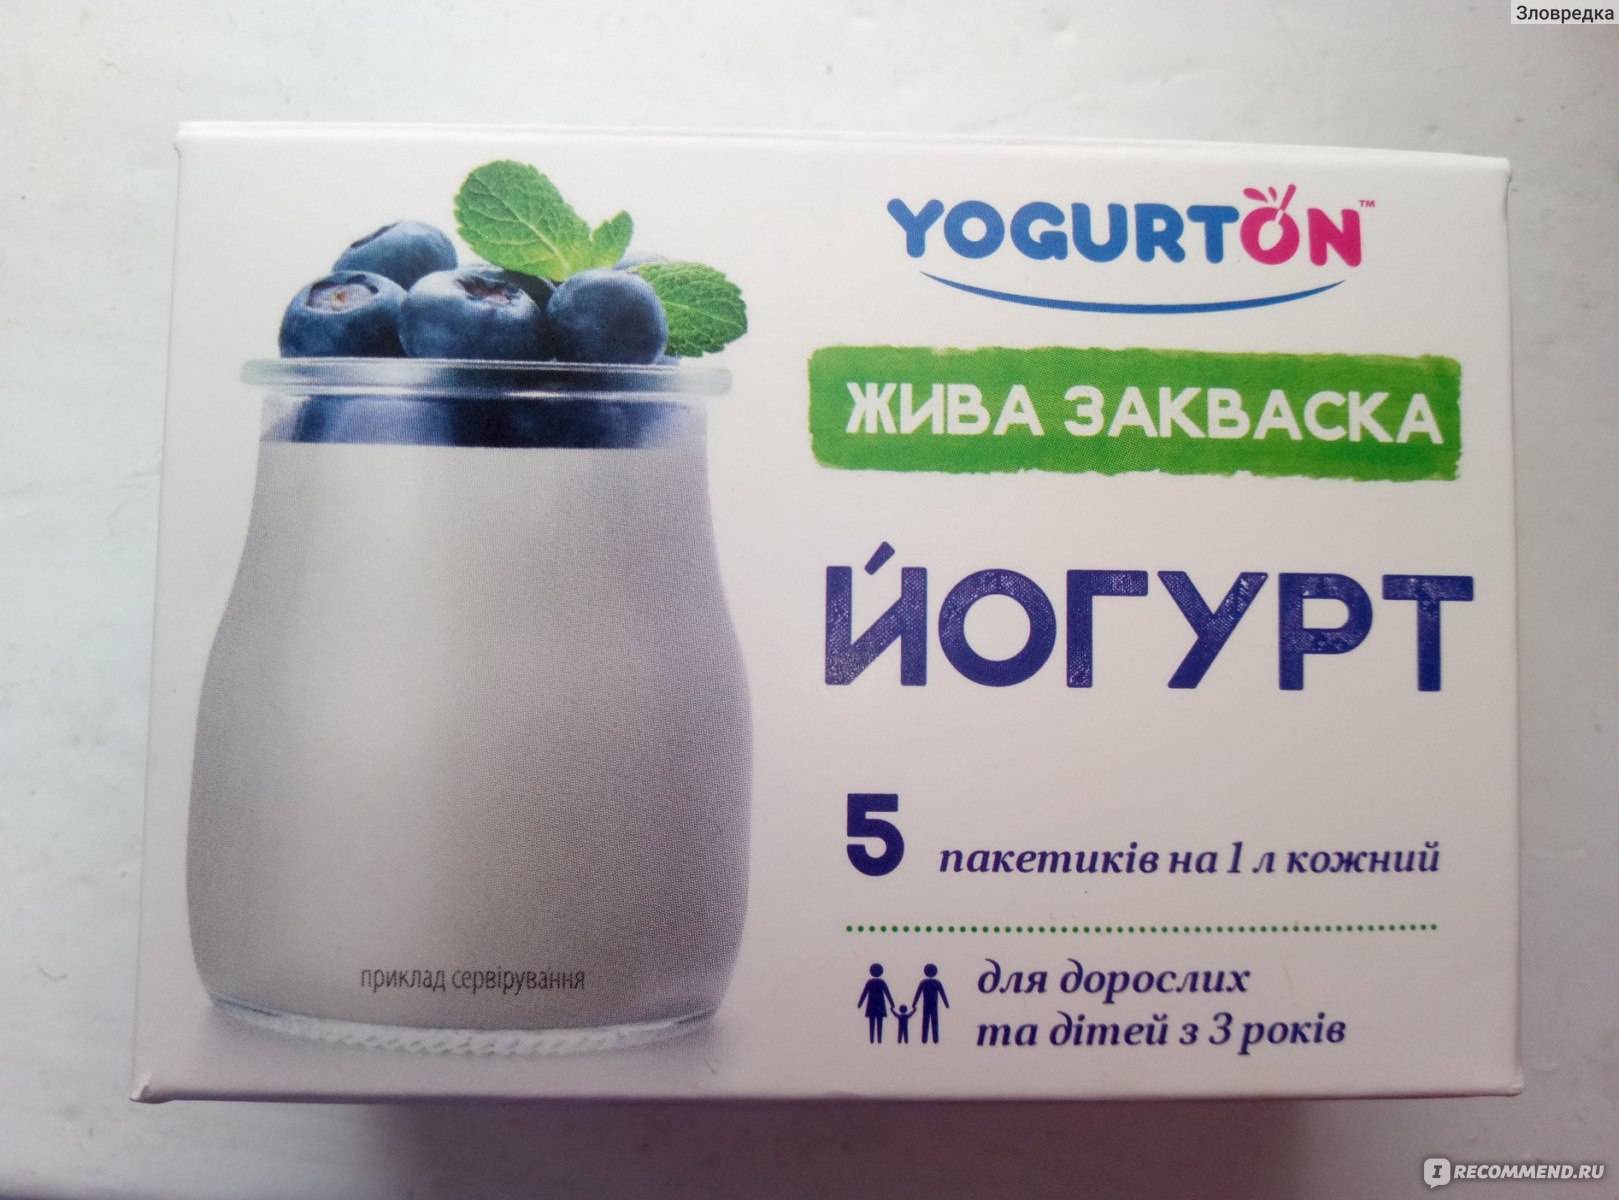 Домашний йогурт - полезный продукт, доступный каждому